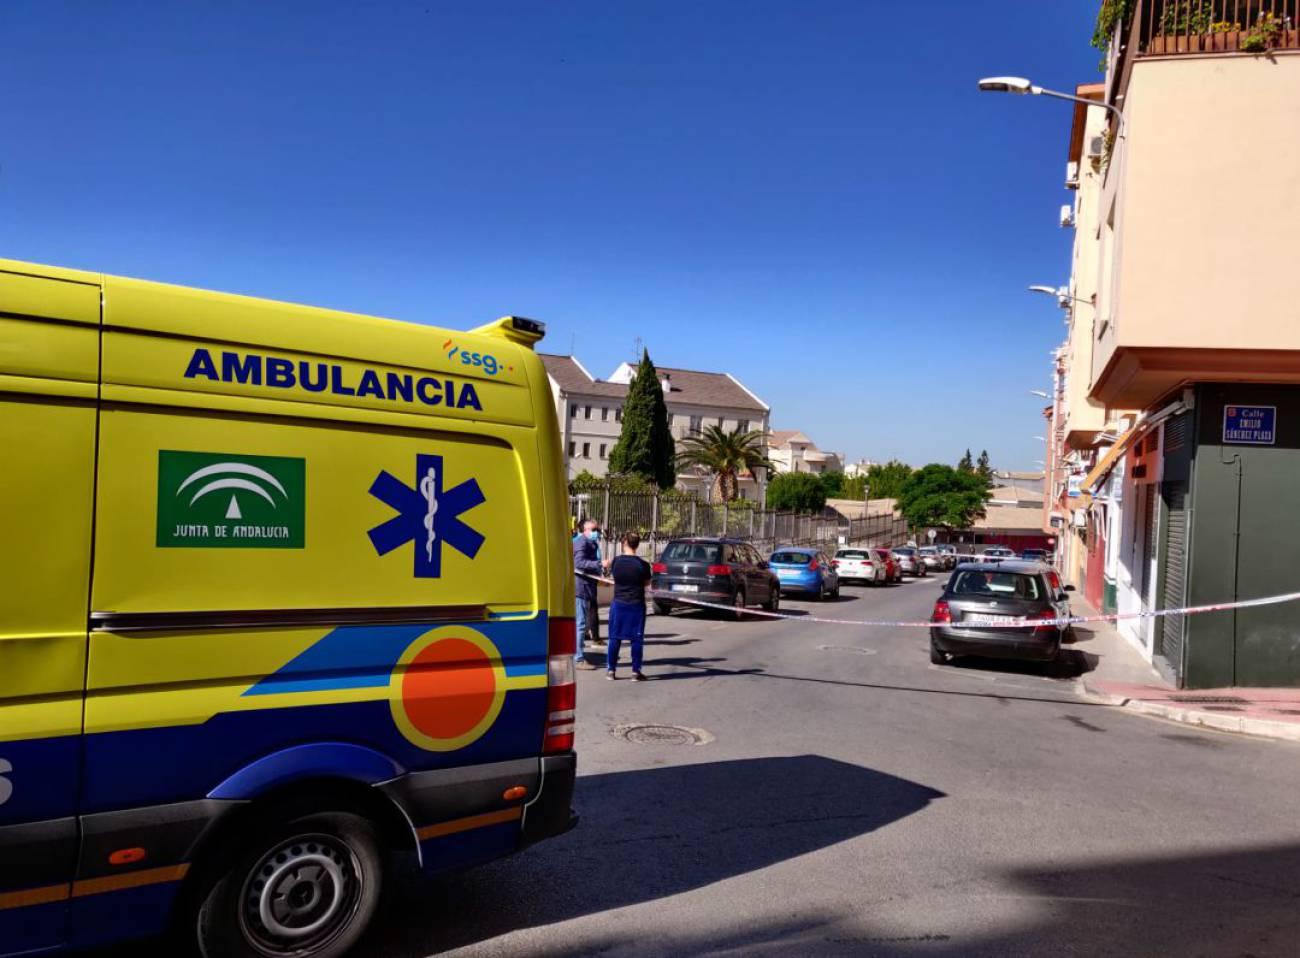 Ambulancia en el lugar de los hechos / Diez TV